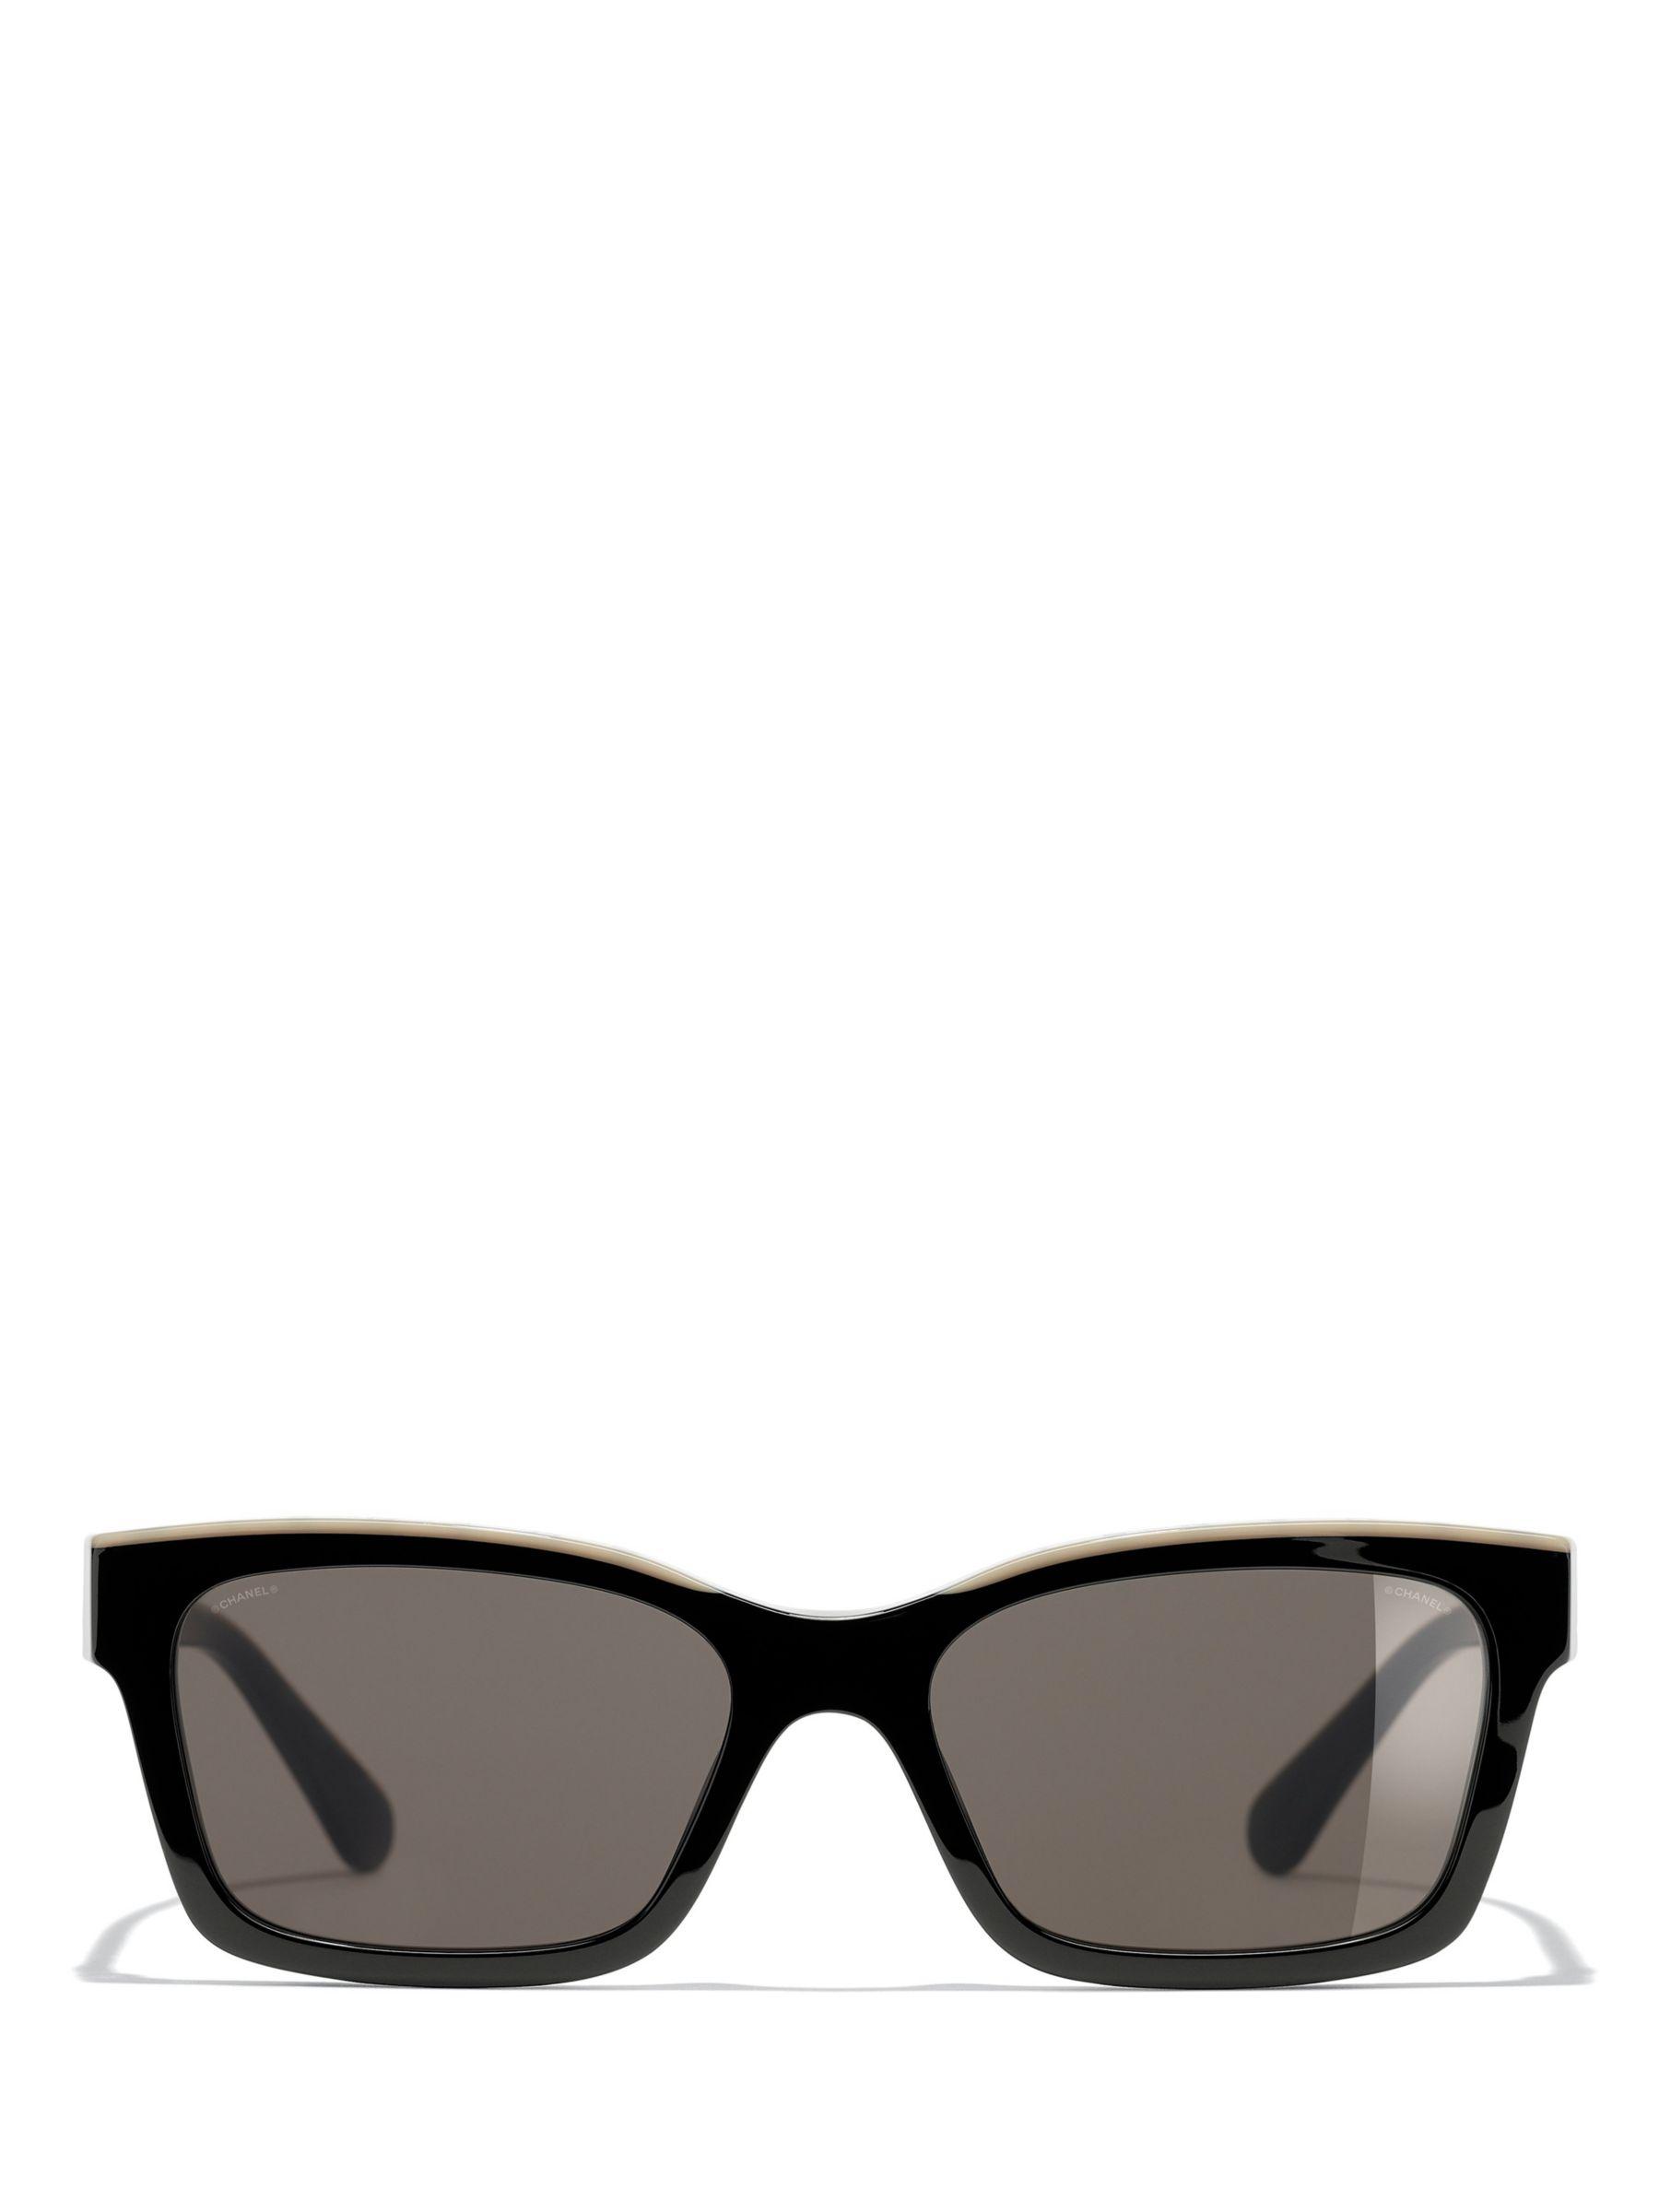 CHANEL Square Sunglasses CH5439Q Black/Grey Gradient